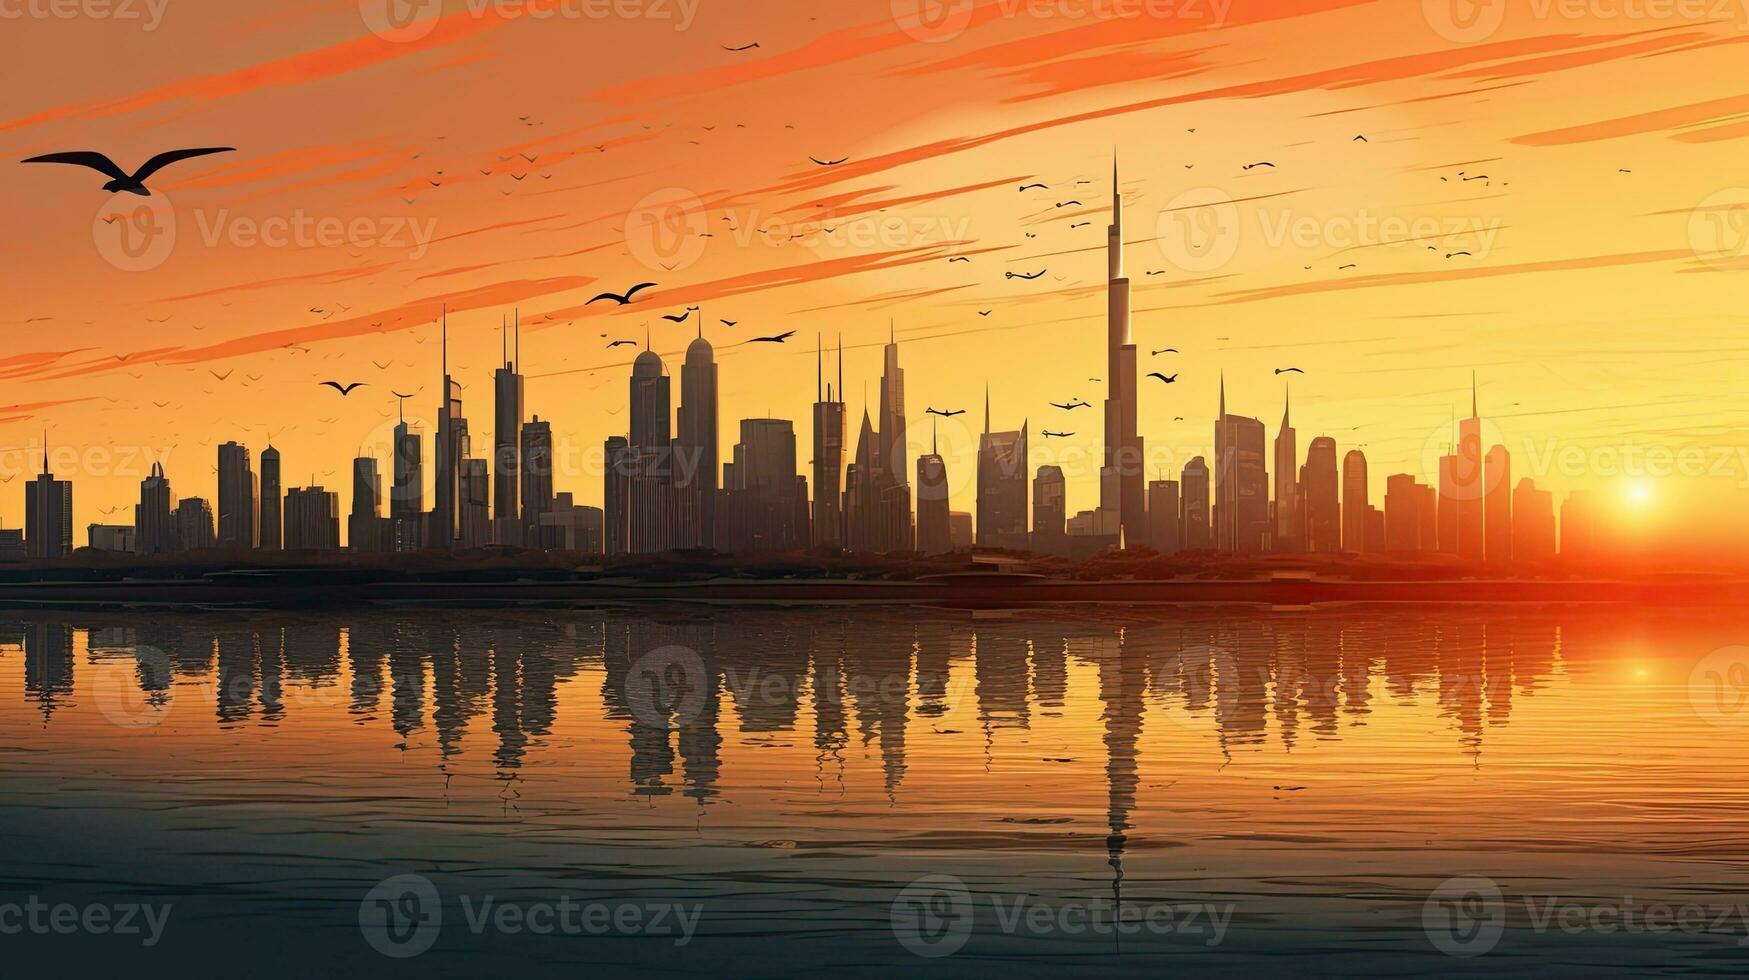 in de Verenigde Arabisch emiraten de boeiend stad van Dubai vitrines een opmerkelijk stad centrum horizon en bekend jumeirah strand gedurende zonsondergang foto